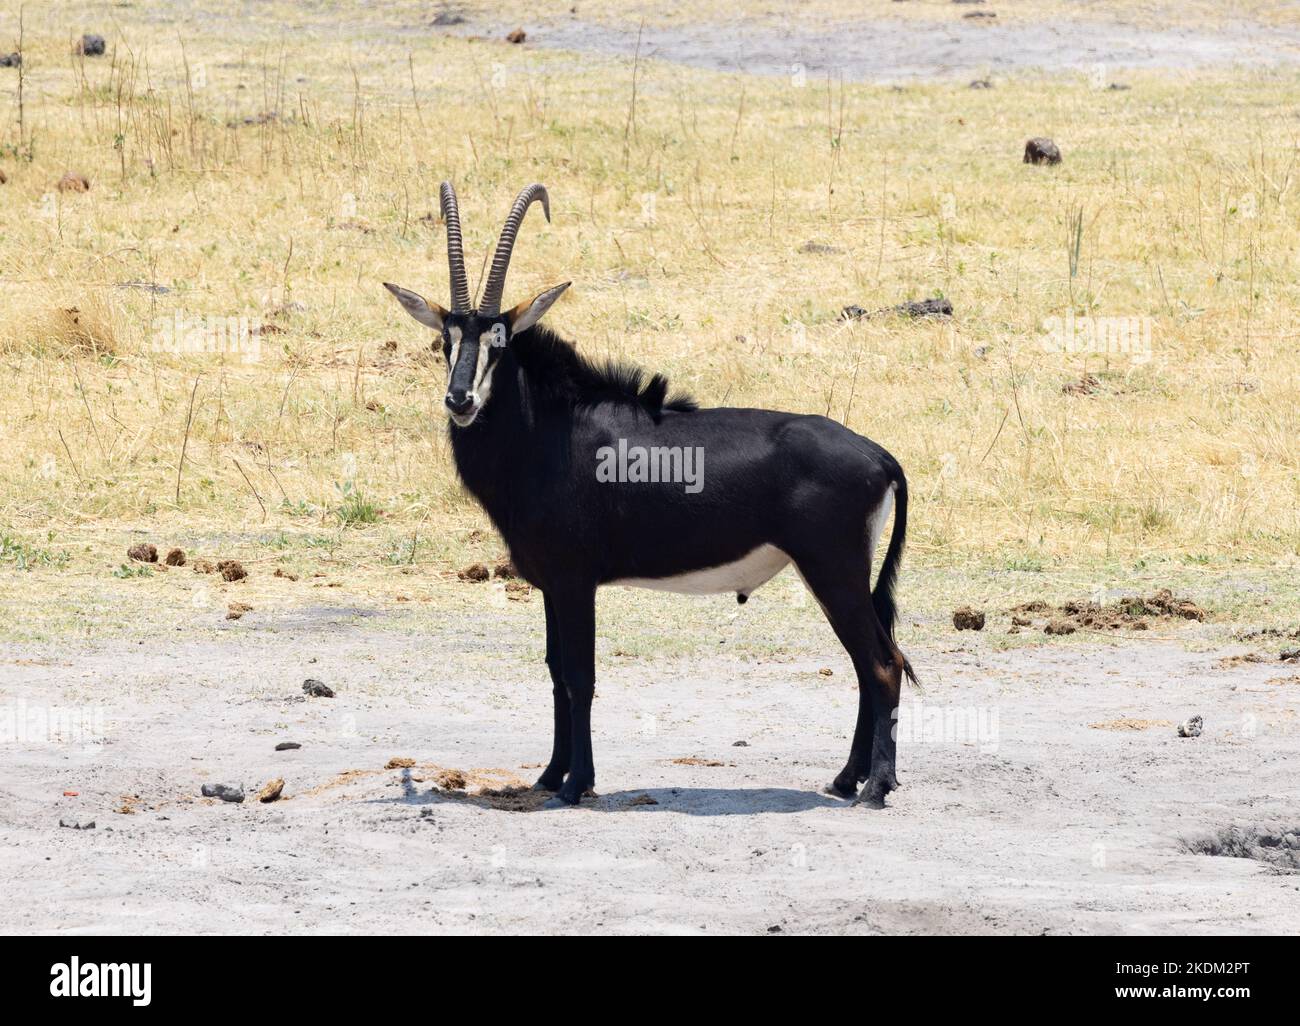 Antelope mâle de sable, Hippotragus niger, grand antilope d'Afrique australe; vue latérale; Parc national de Chobe Botswana Afrique. Antilopes africains. Banque D'Images